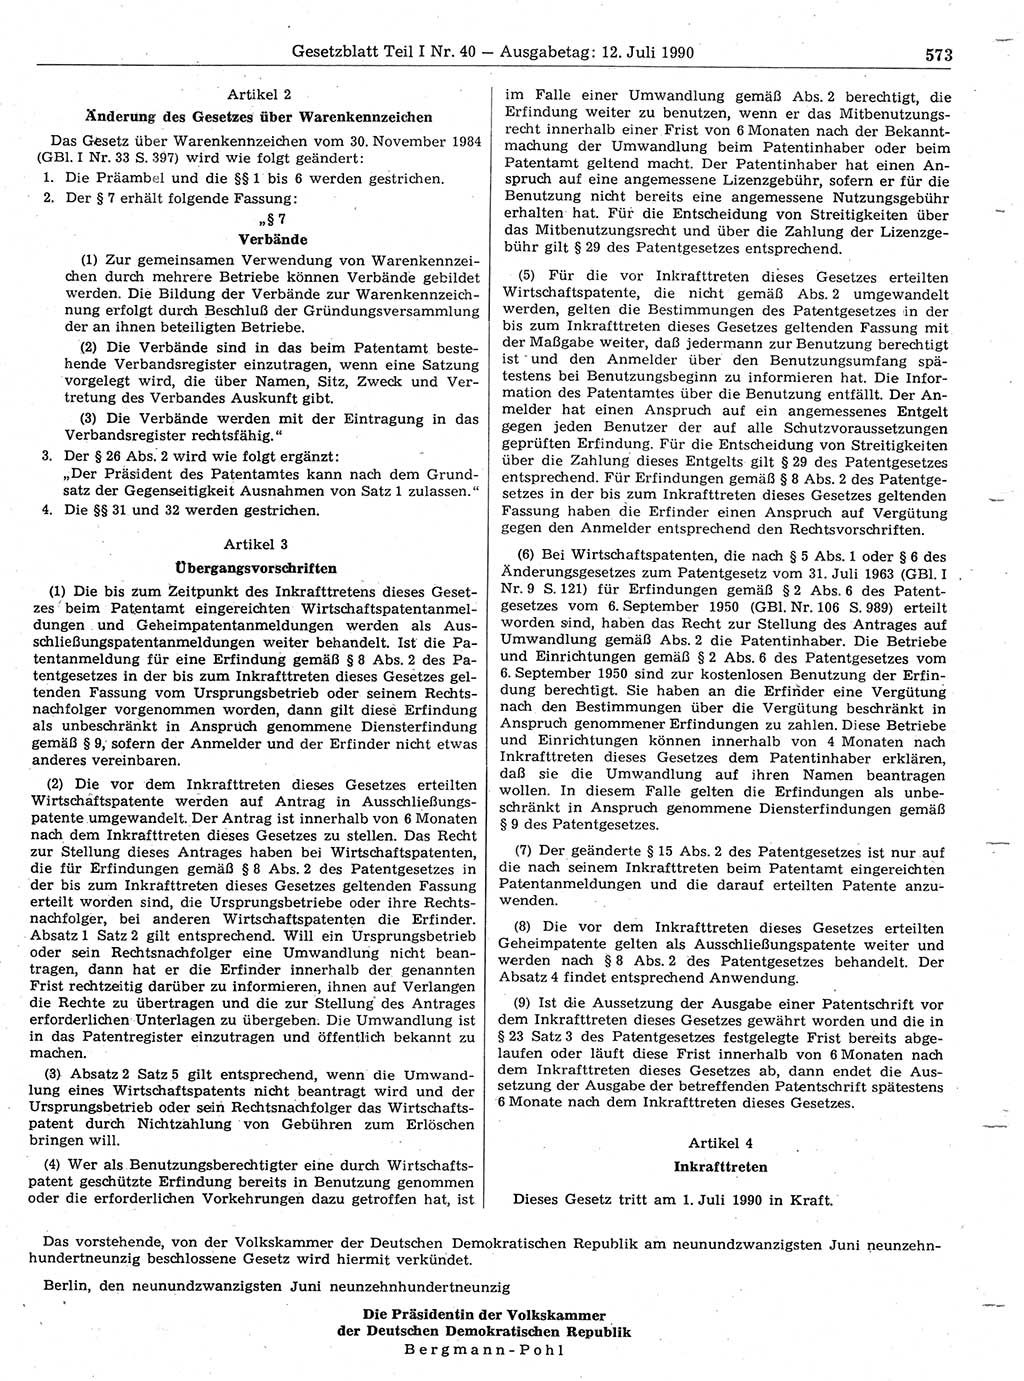 Gesetzblatt (GBl.) der Deutschen Demokratischen Republik (DDR) Teil Ⅰ 1990, Seite 573 (GBl. DDR Ⅰ 1990, S. 573)